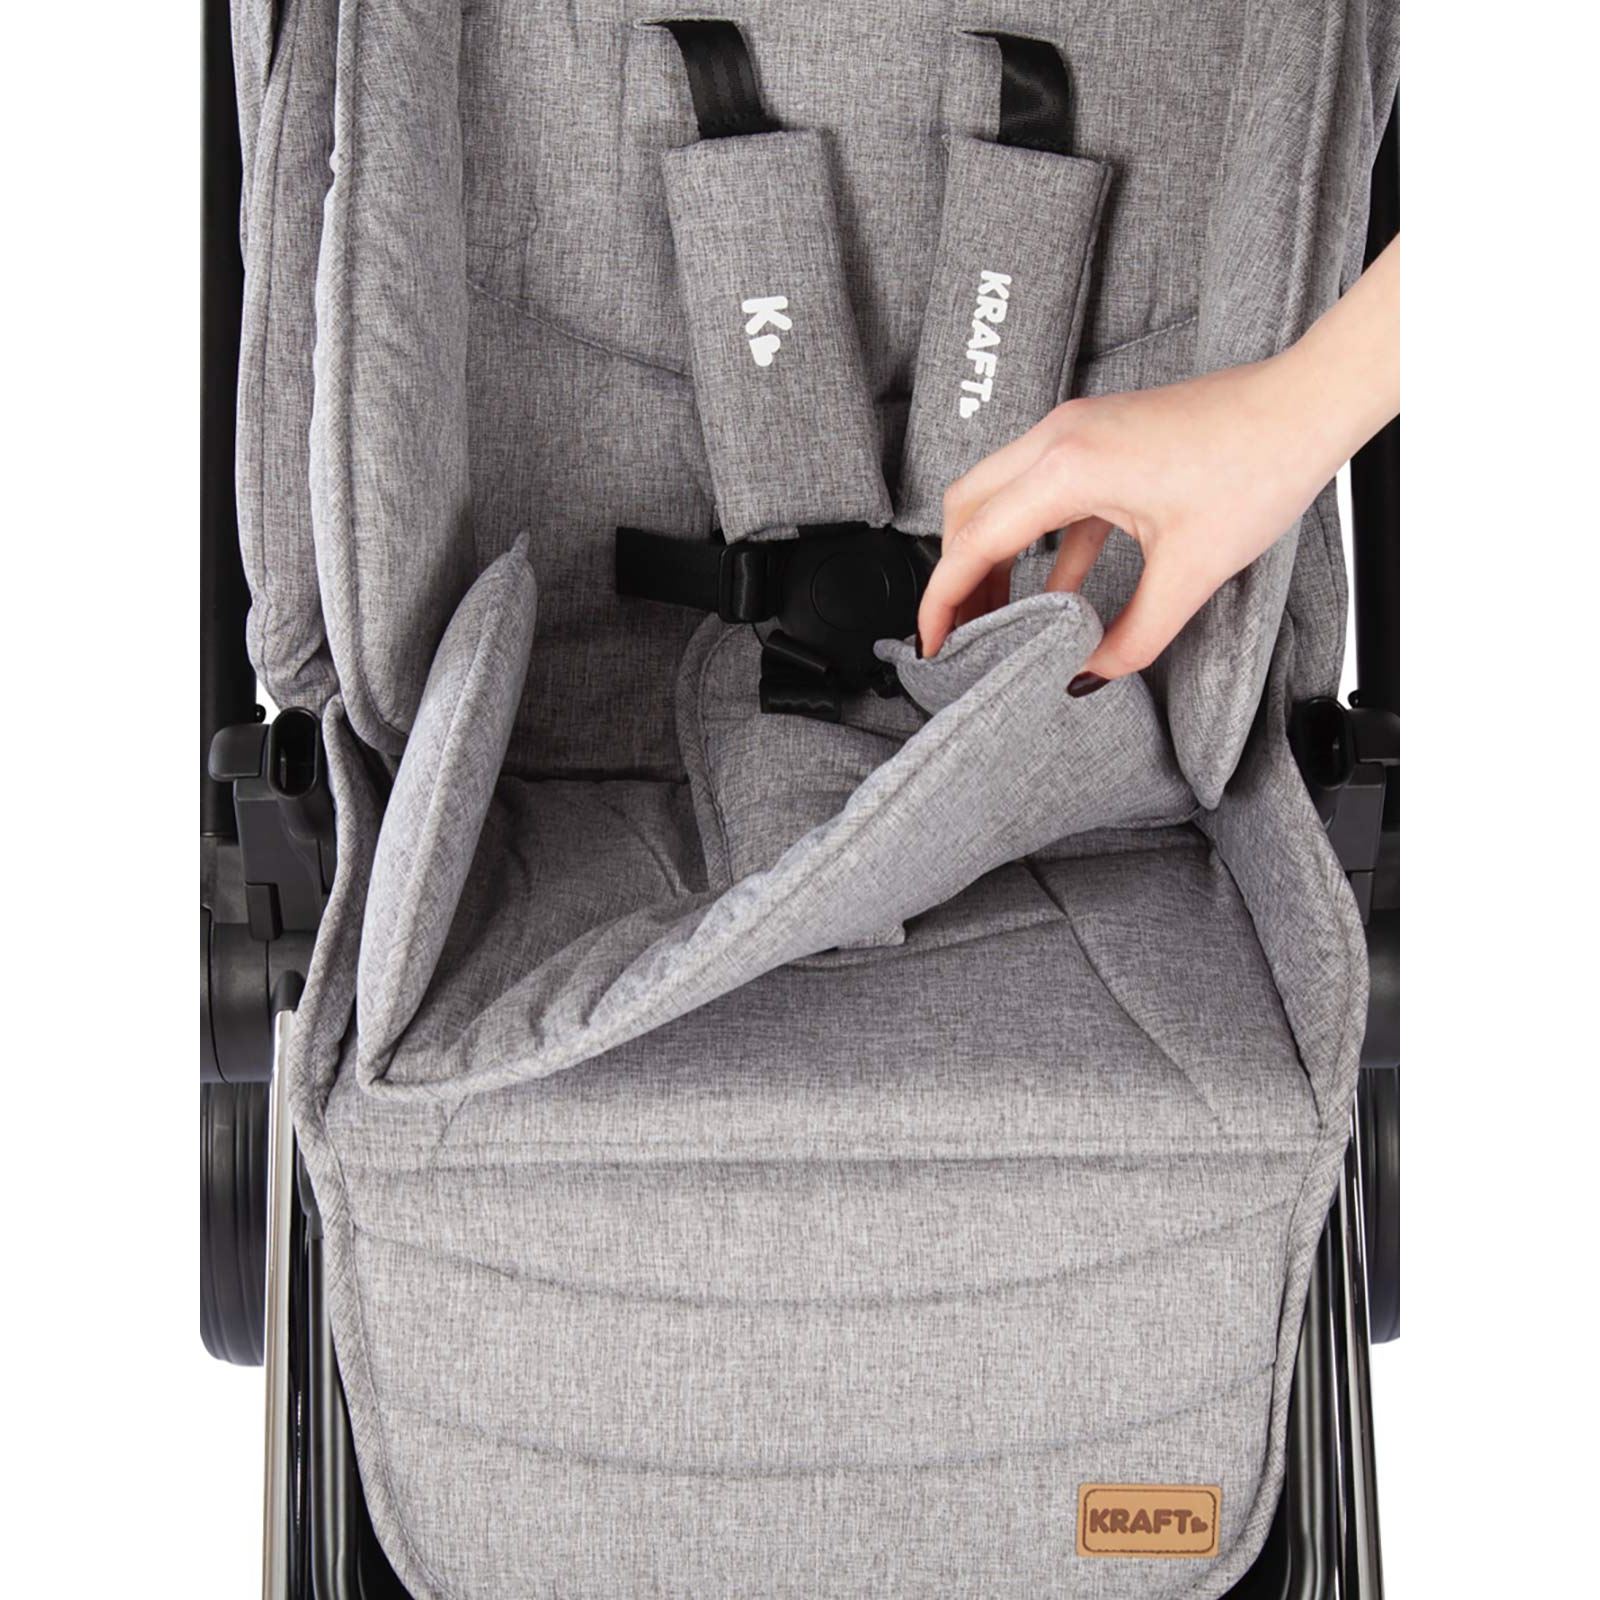 Kraft Cheer Travel Sistem Bebek Arabası Açık-Gri